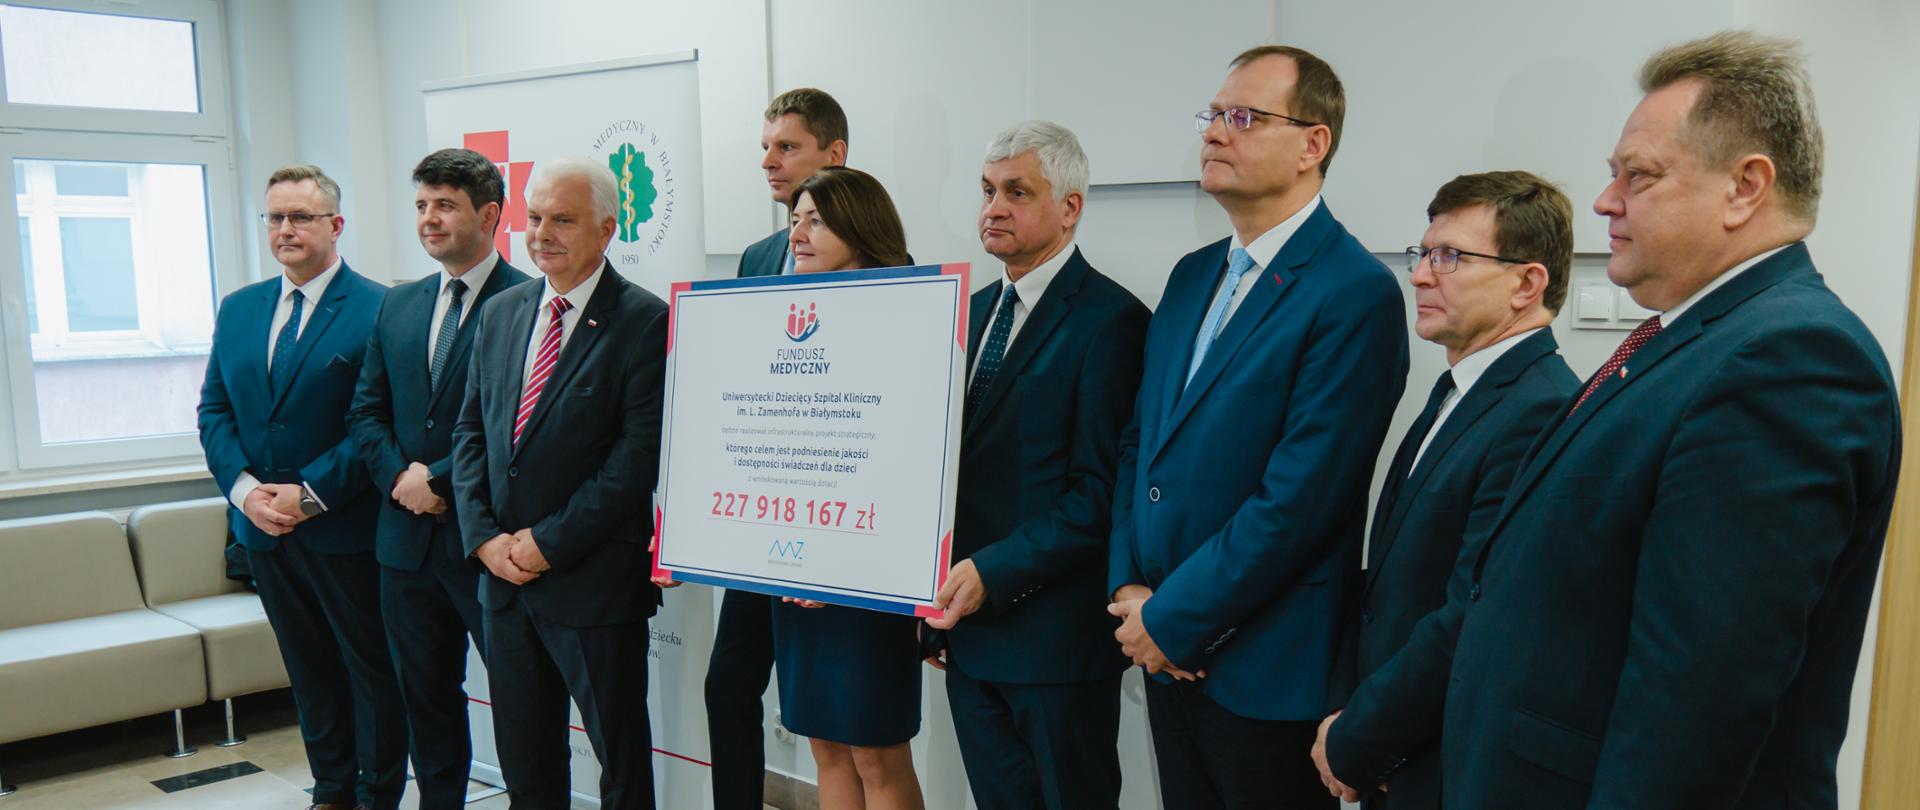 228 mln zł z Funduszu Medycznego dla Uniwersyteckiego Dziecięcego Szpitala Klinicznego w Białymstoku